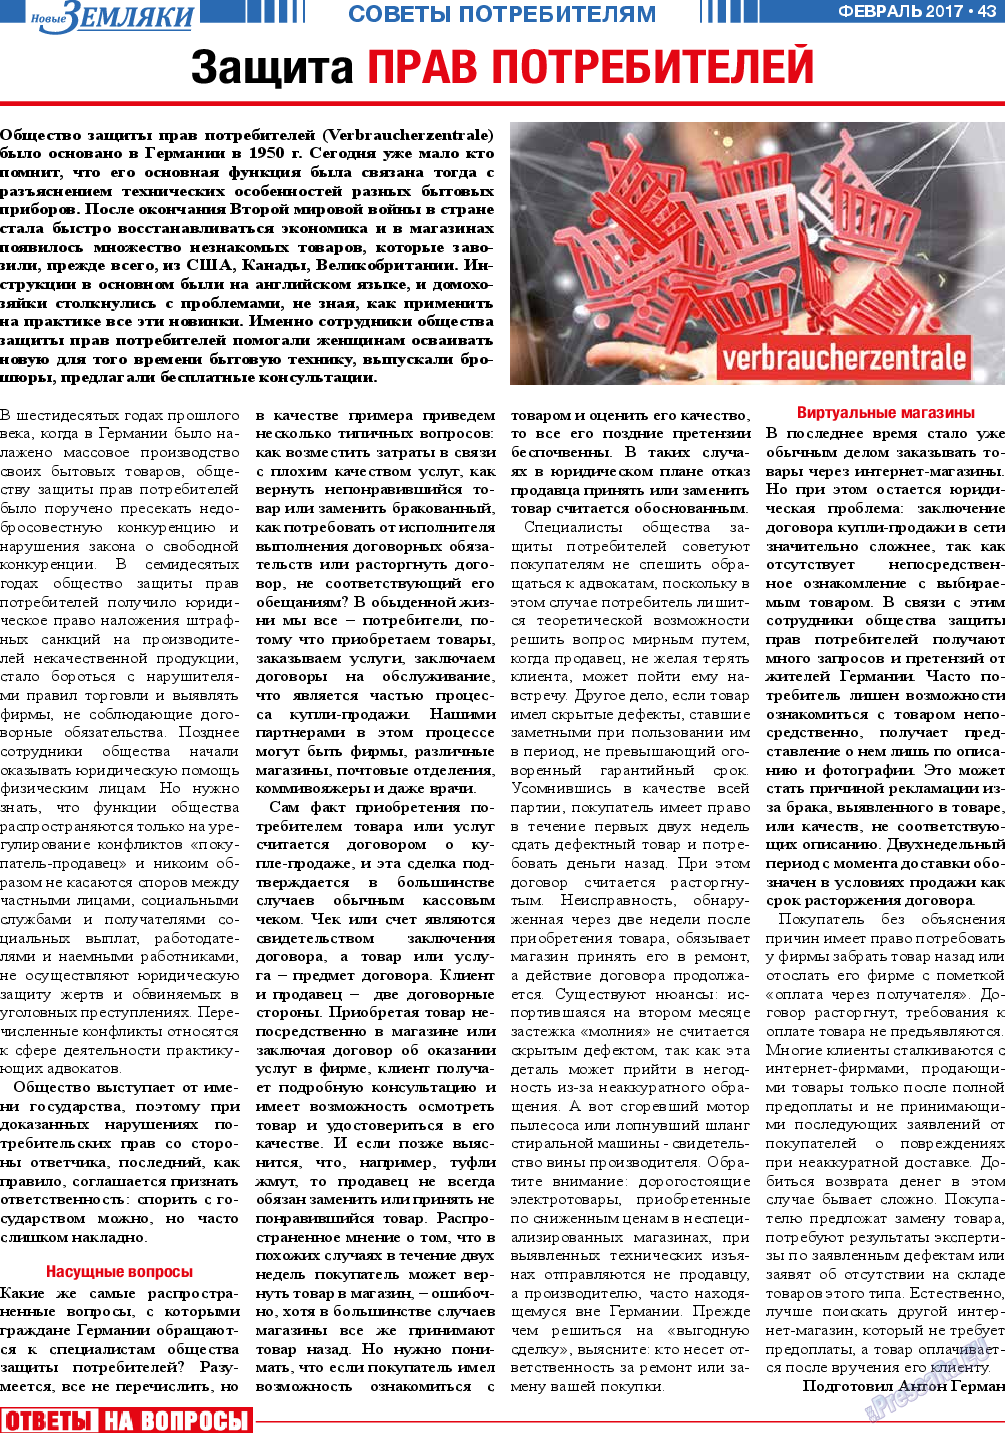 Новые Земляки, газета. 2017 №2 стр.43